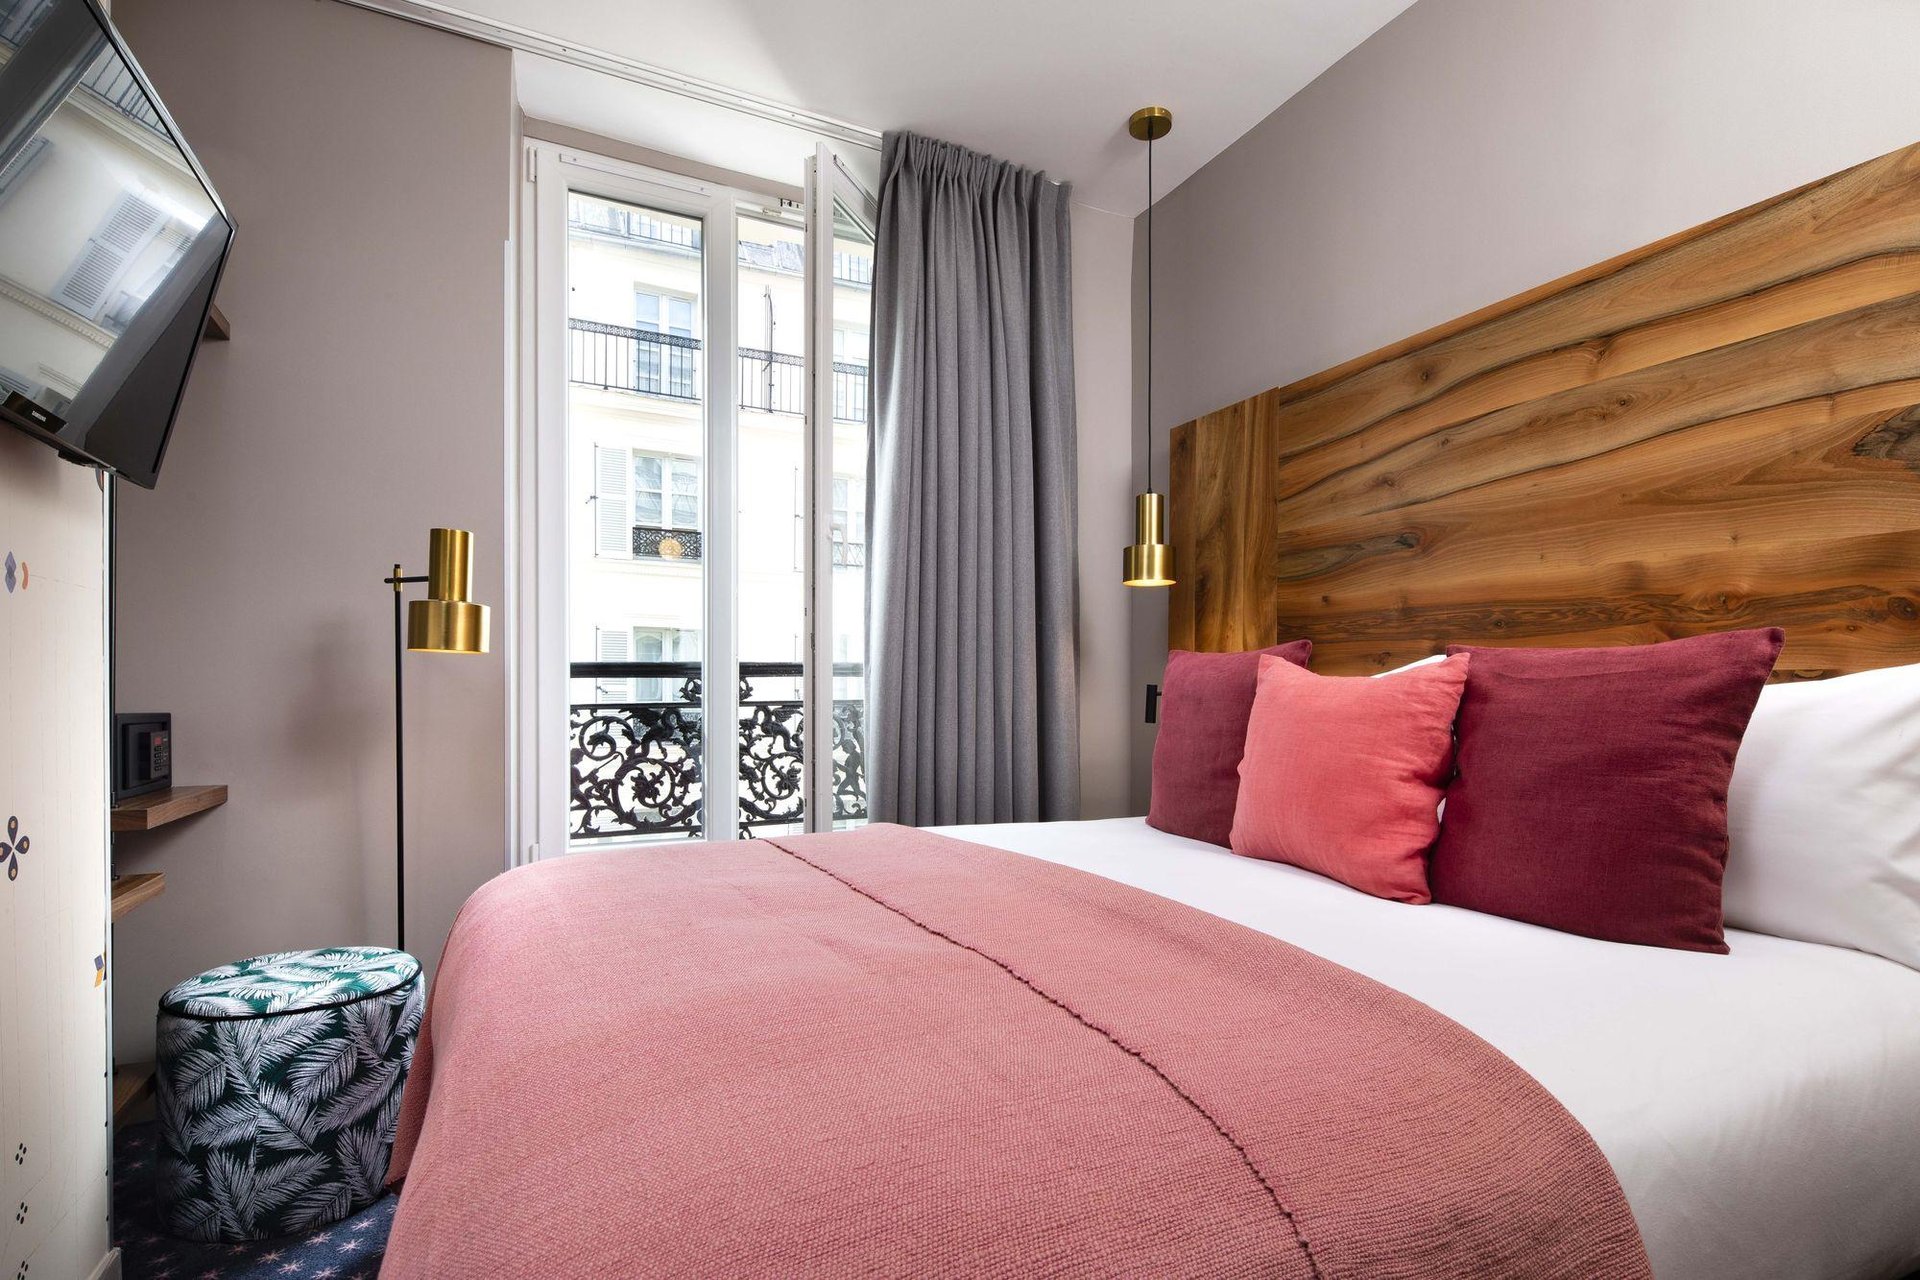 Hôtel Maxim Folies Adjacent Rooms Bed